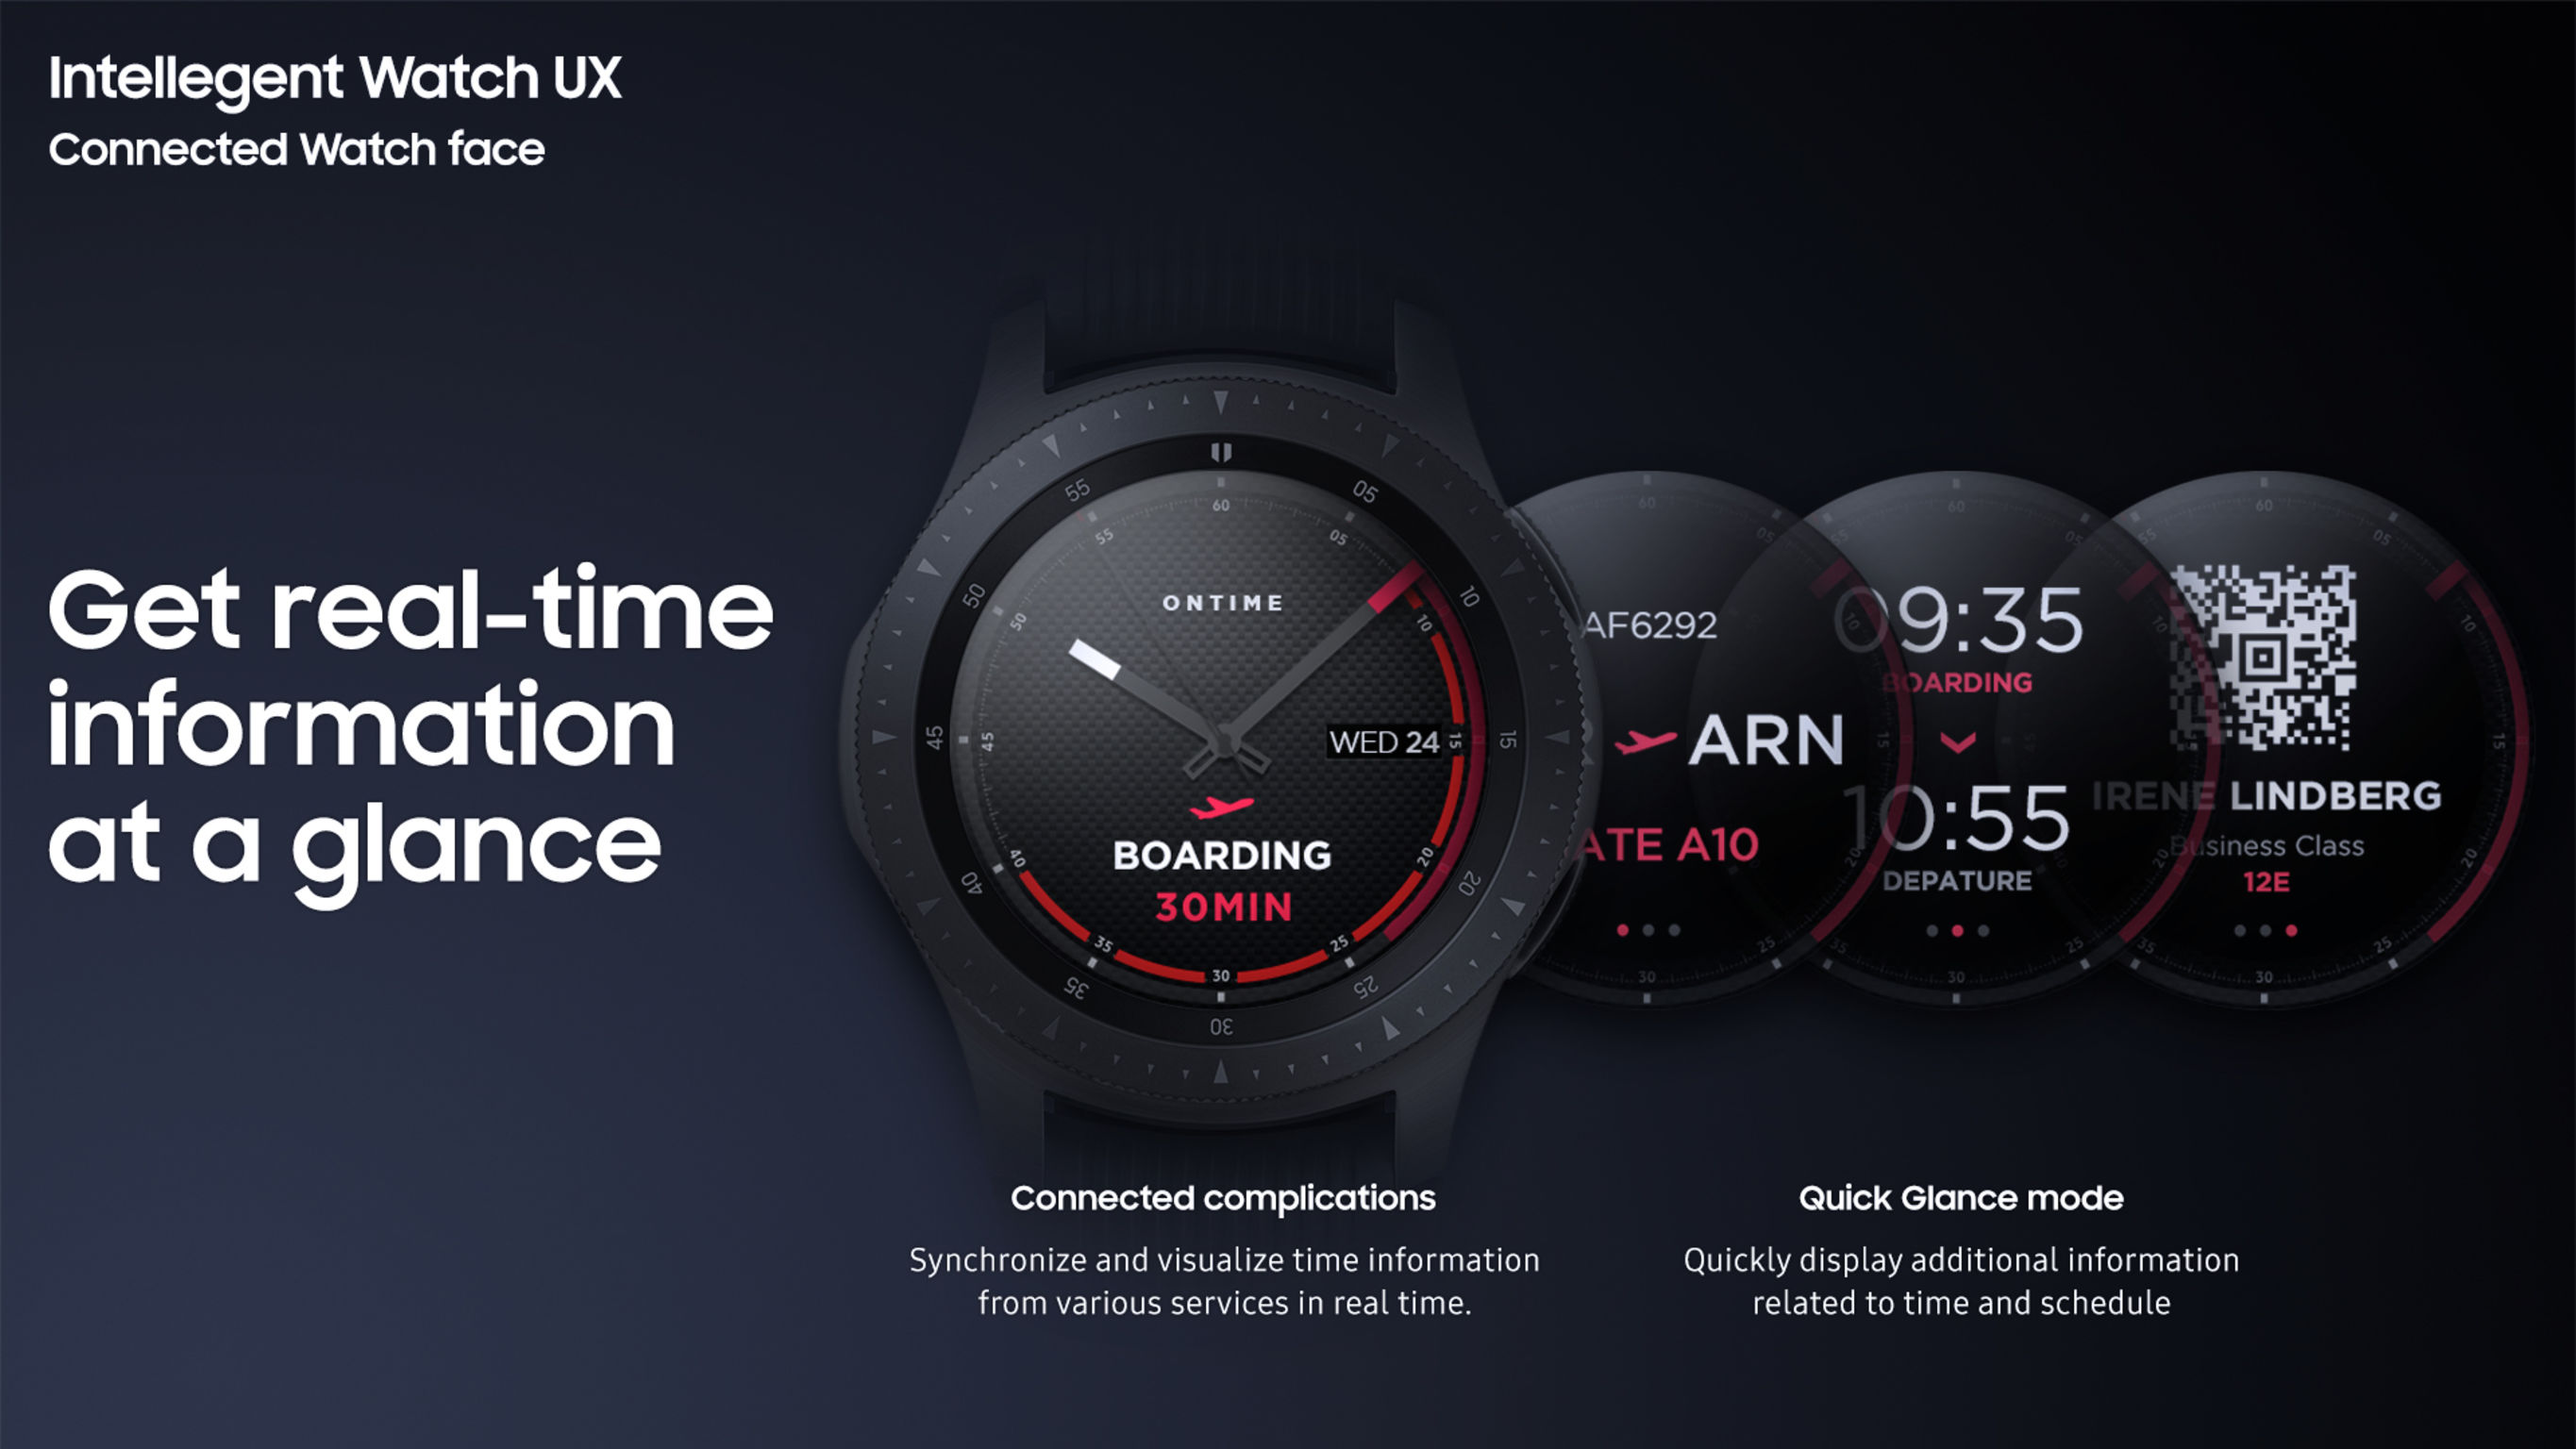 Intelligent Watch UX